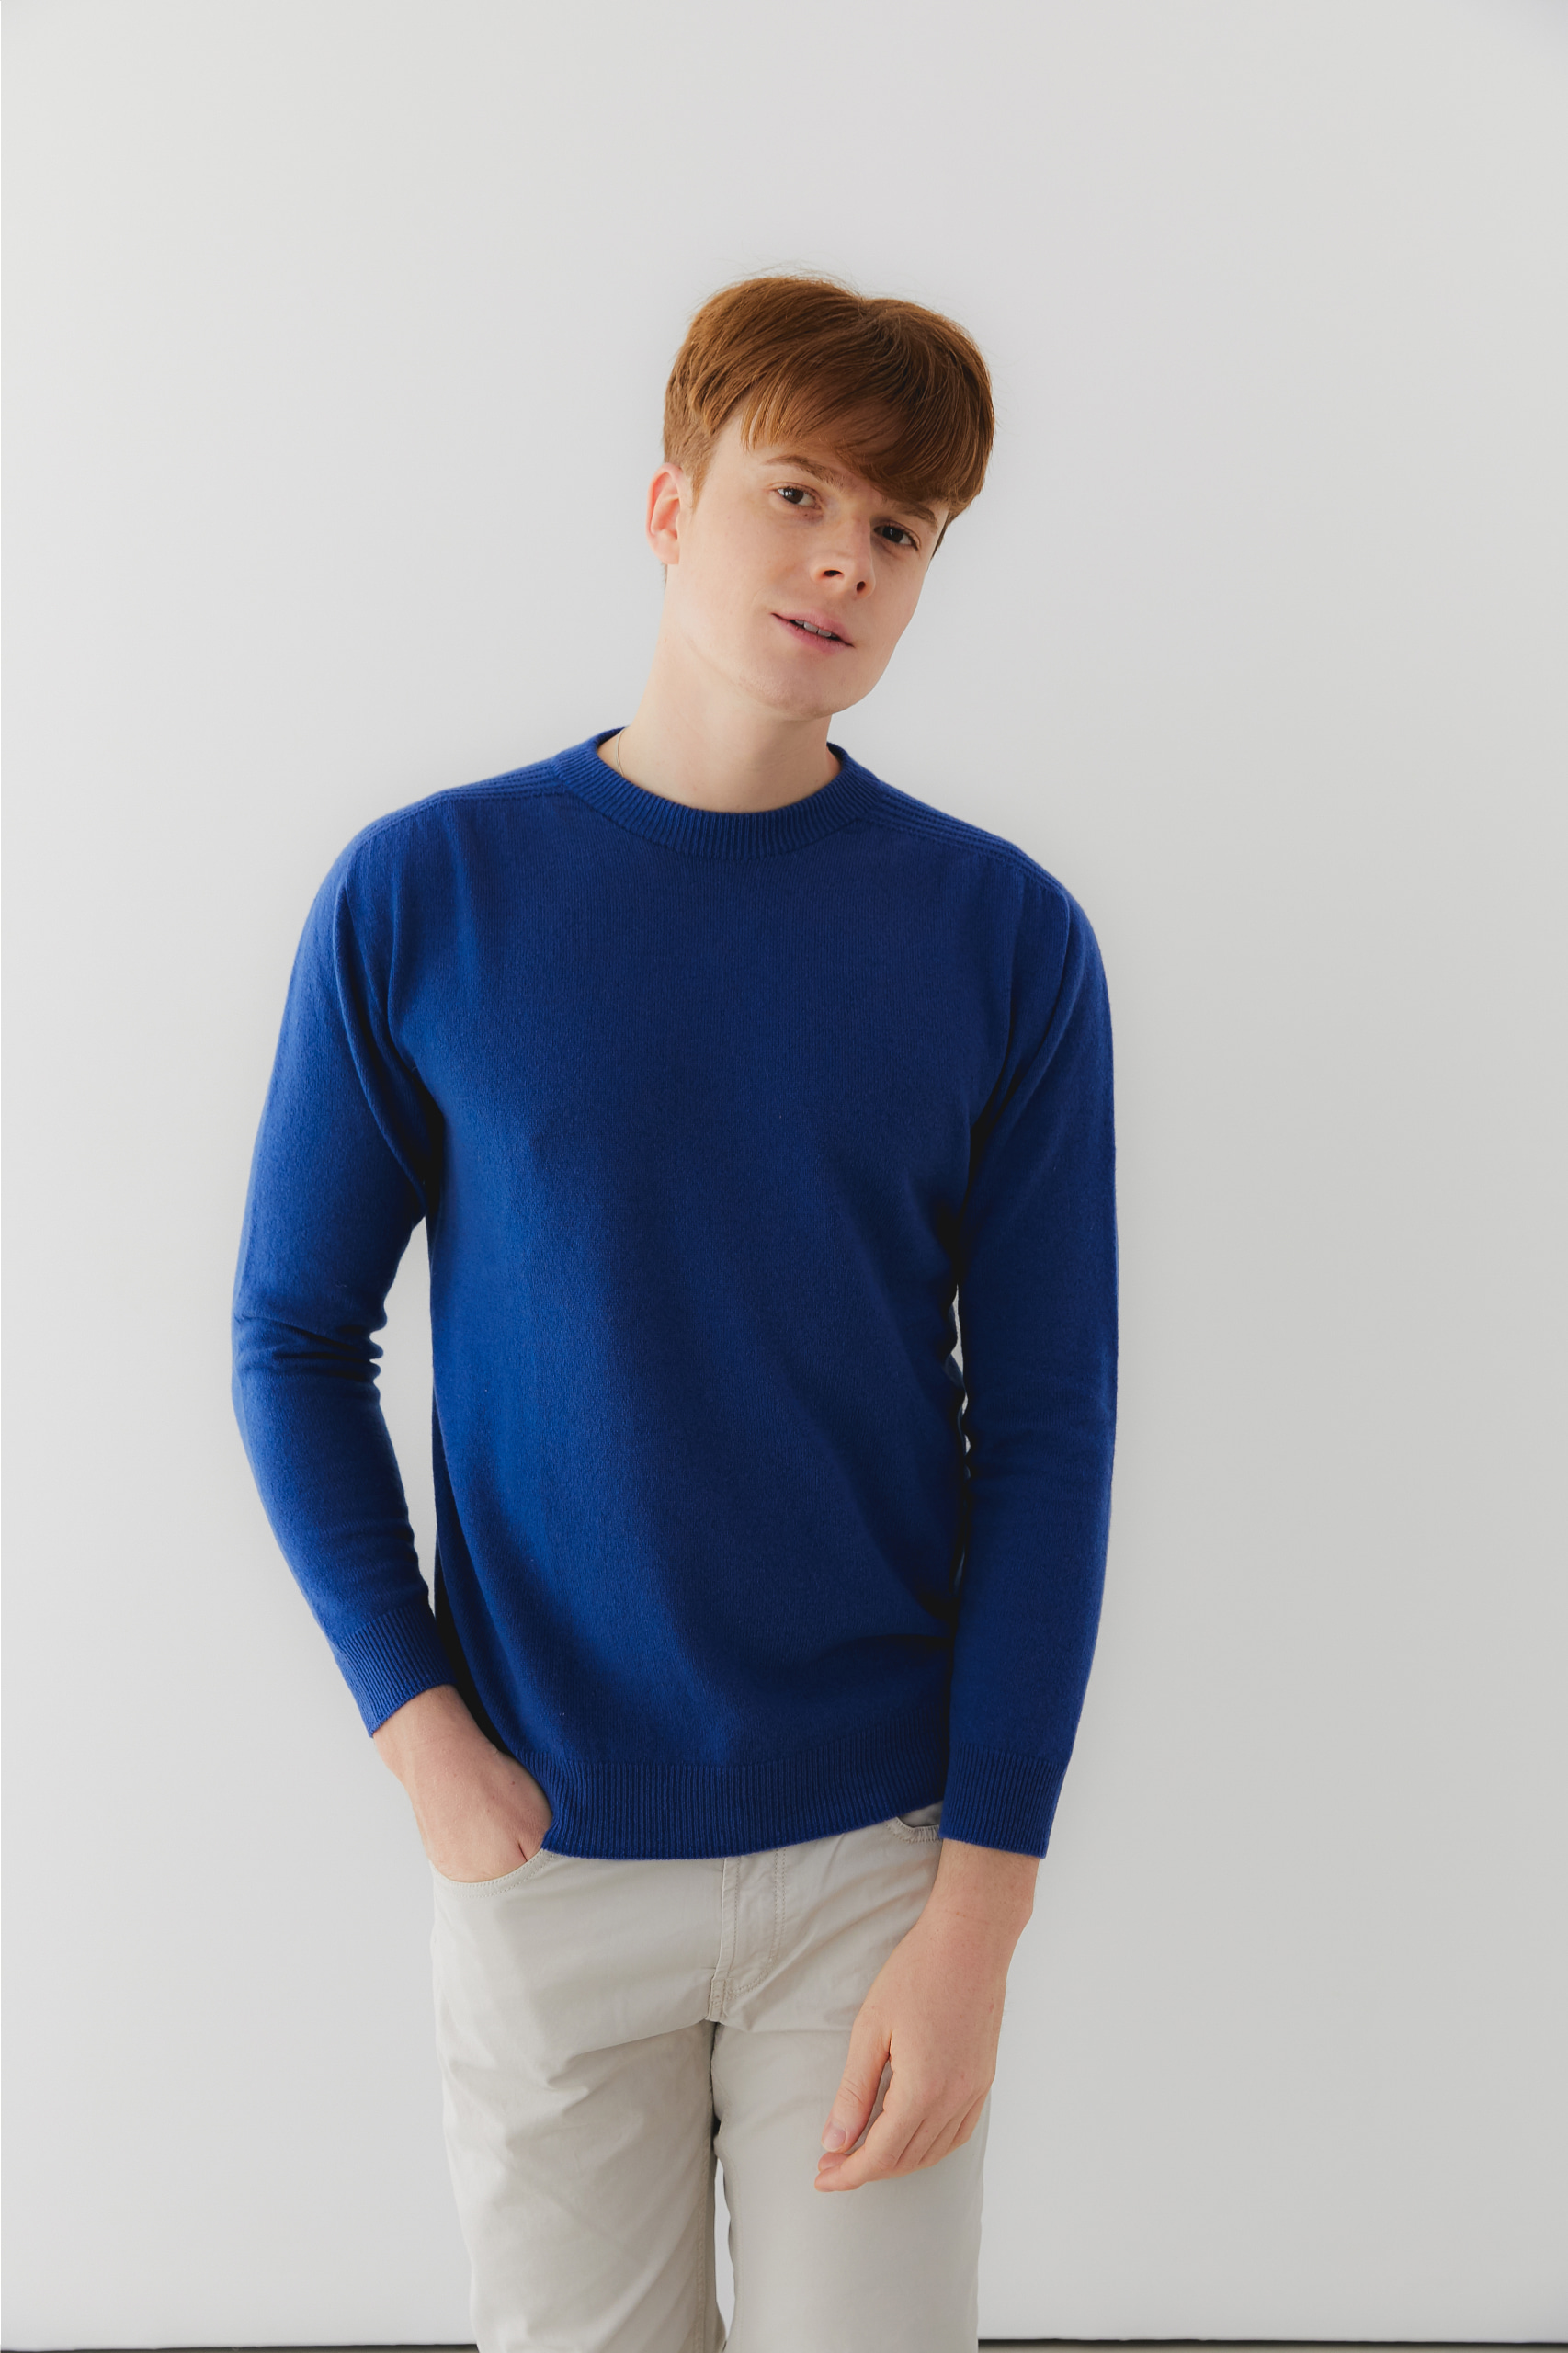 프리미엄 캐시미어 100 남성 라운드넥 스웨터 [Pure cashmere100 whole-garment knitting roundneck pullover - Royal blue]